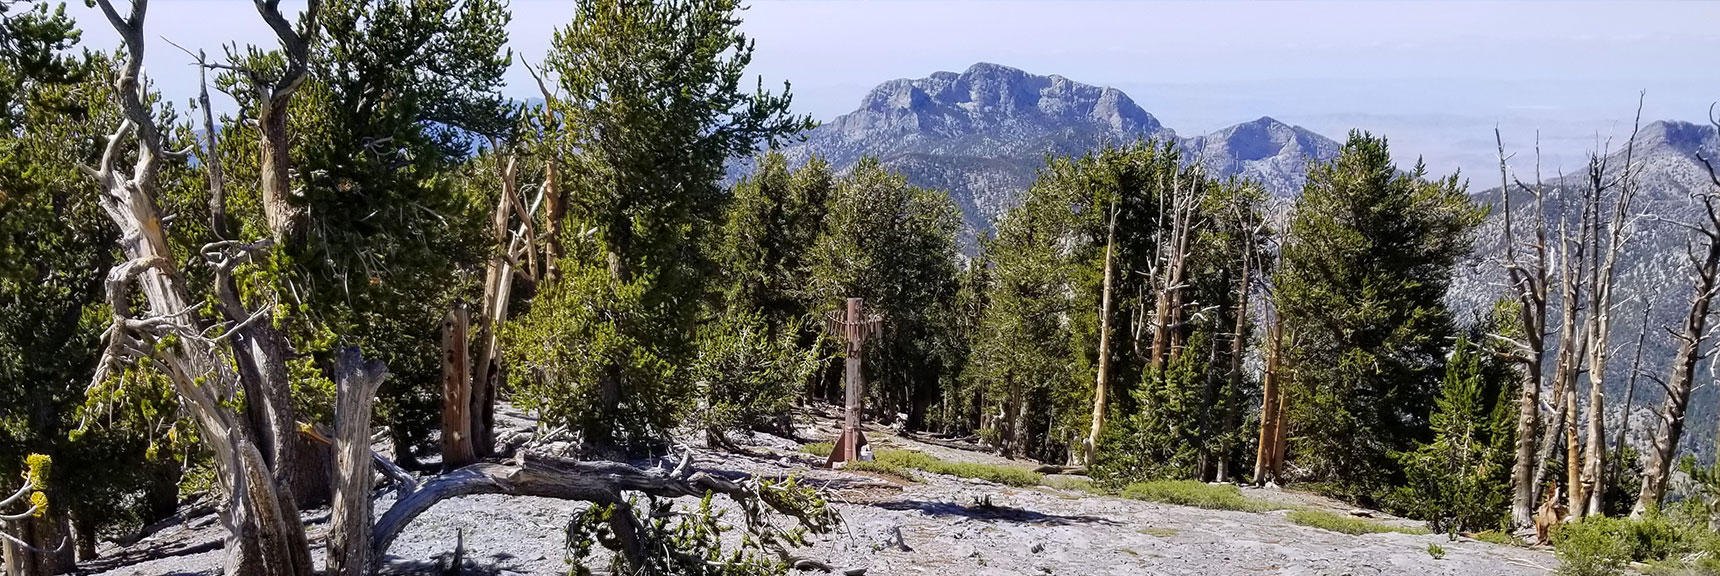 Abandoned Ski Tower Below Lee Peak Marks Left Turn to Rejoin Upper North Loop Trail in Mt Charleston Wilderness, Nevada